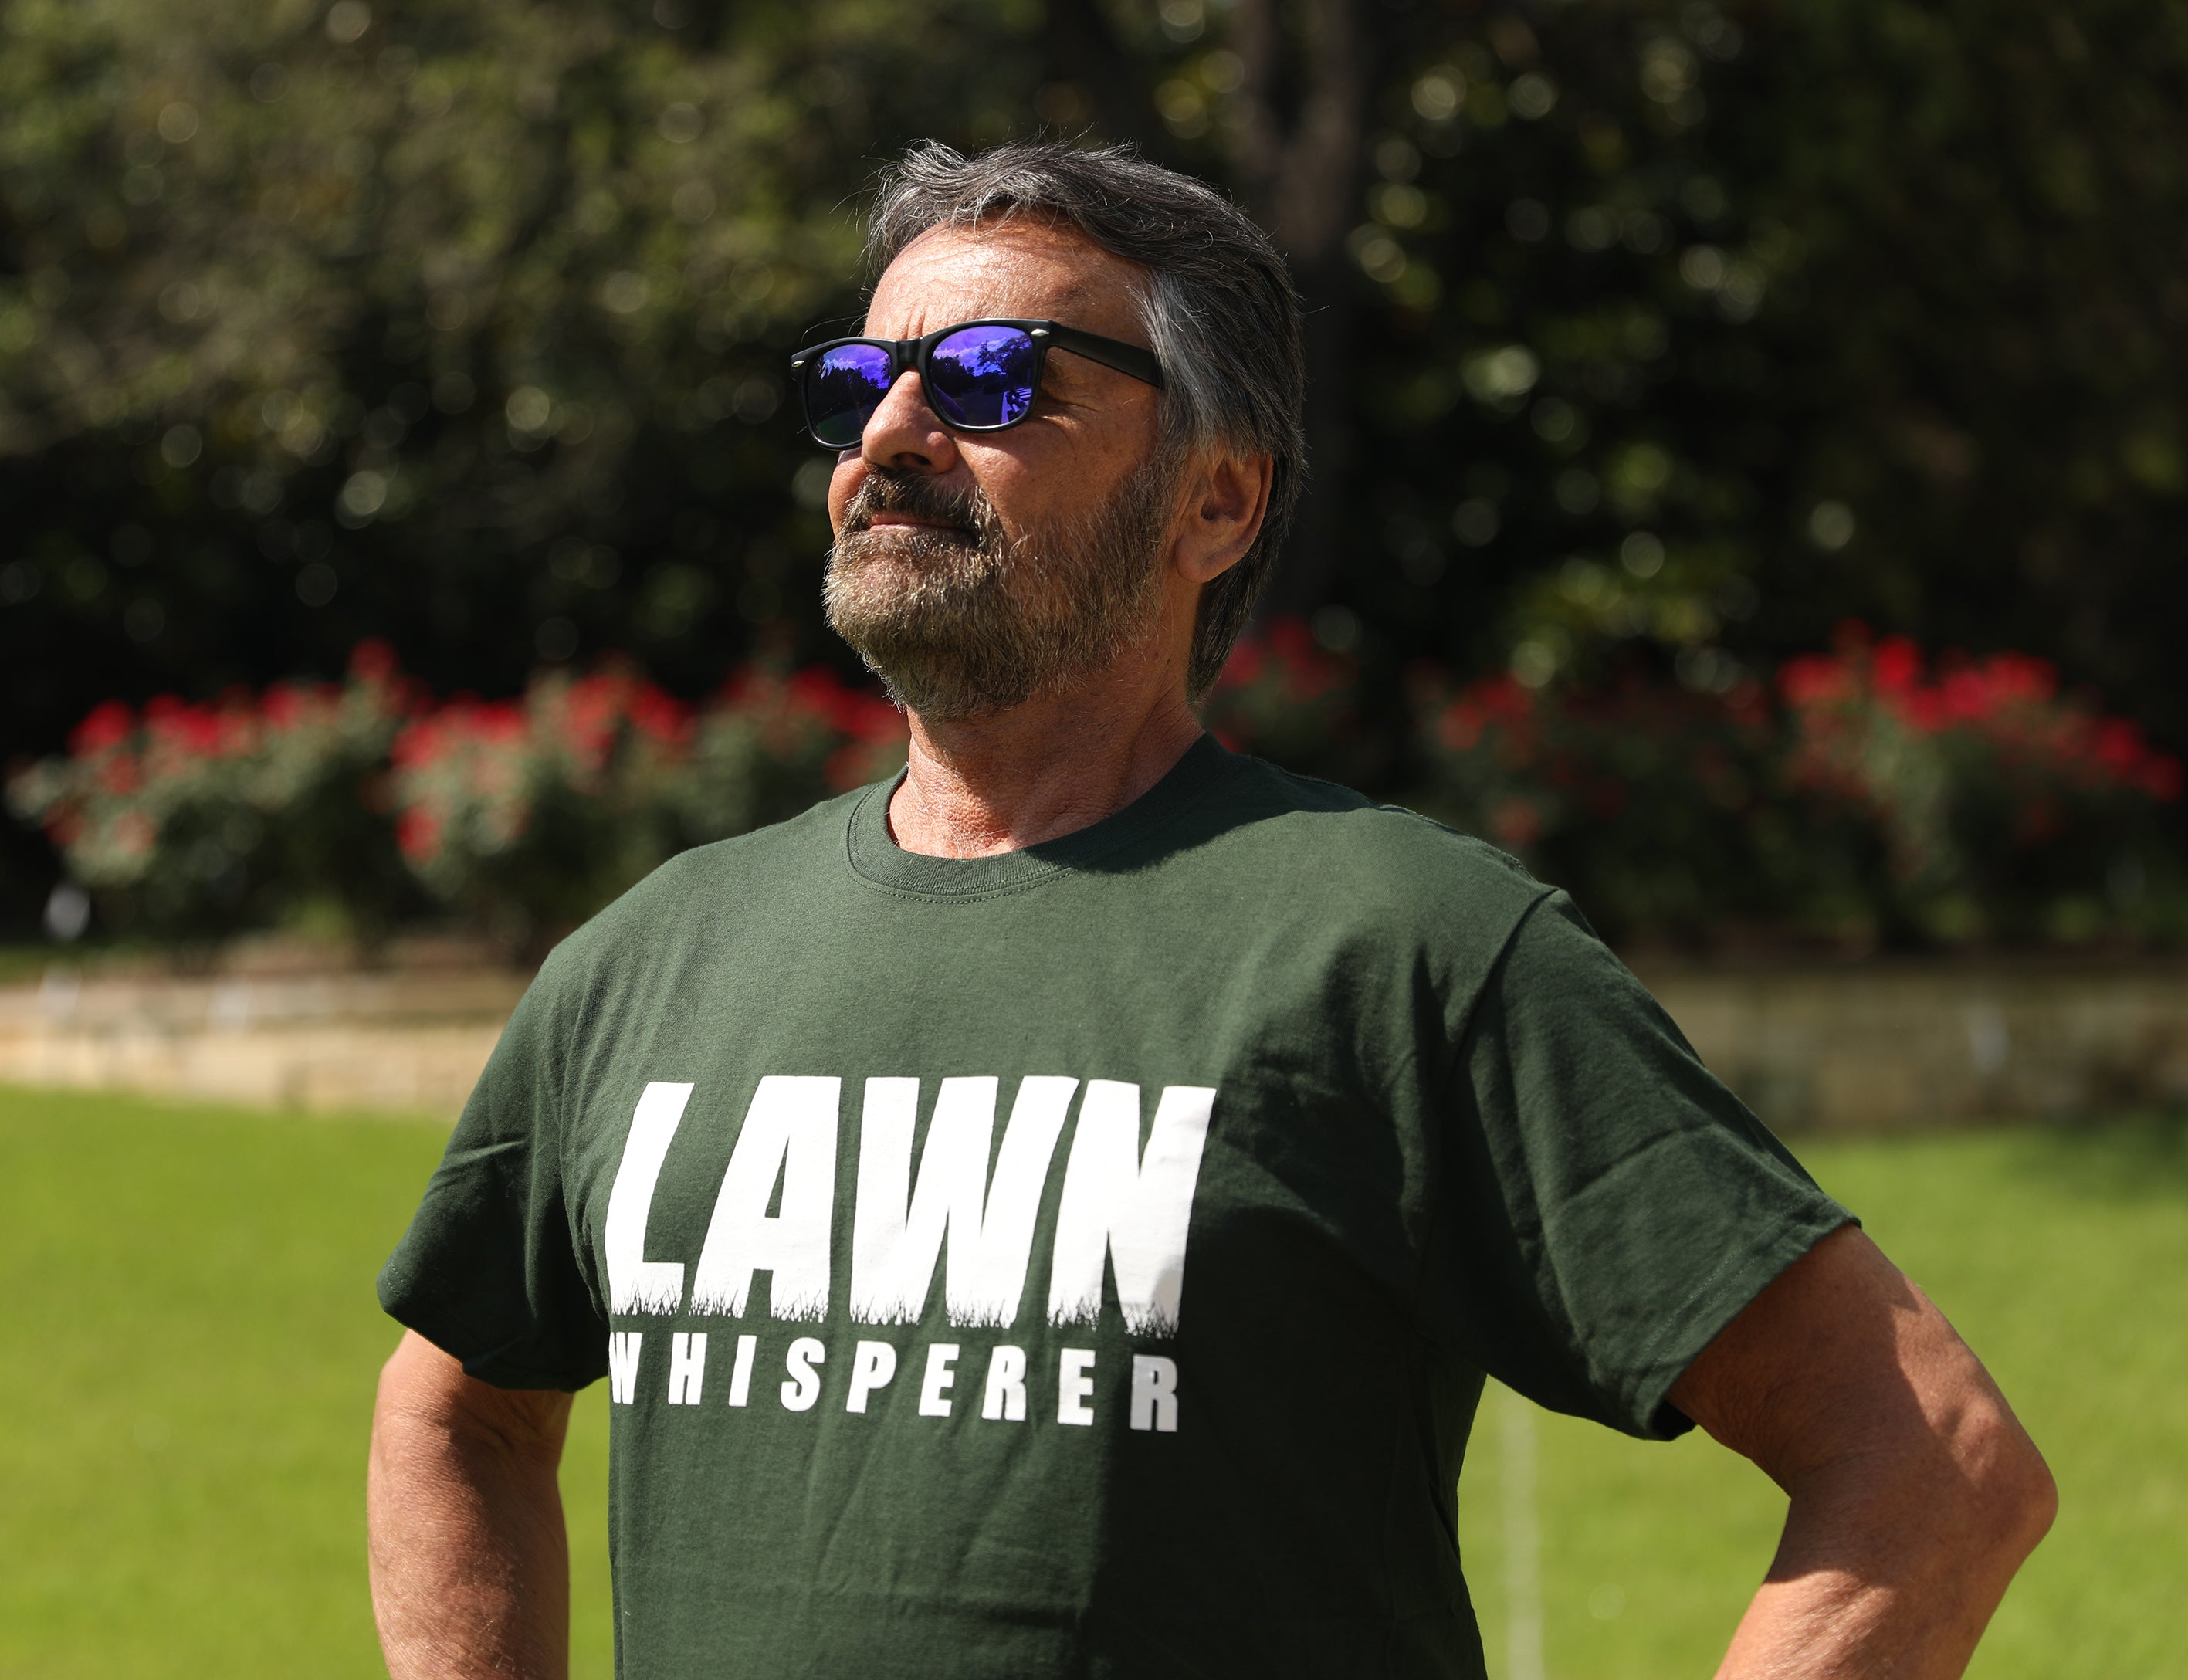 Lawn Whisperer T-Shirt